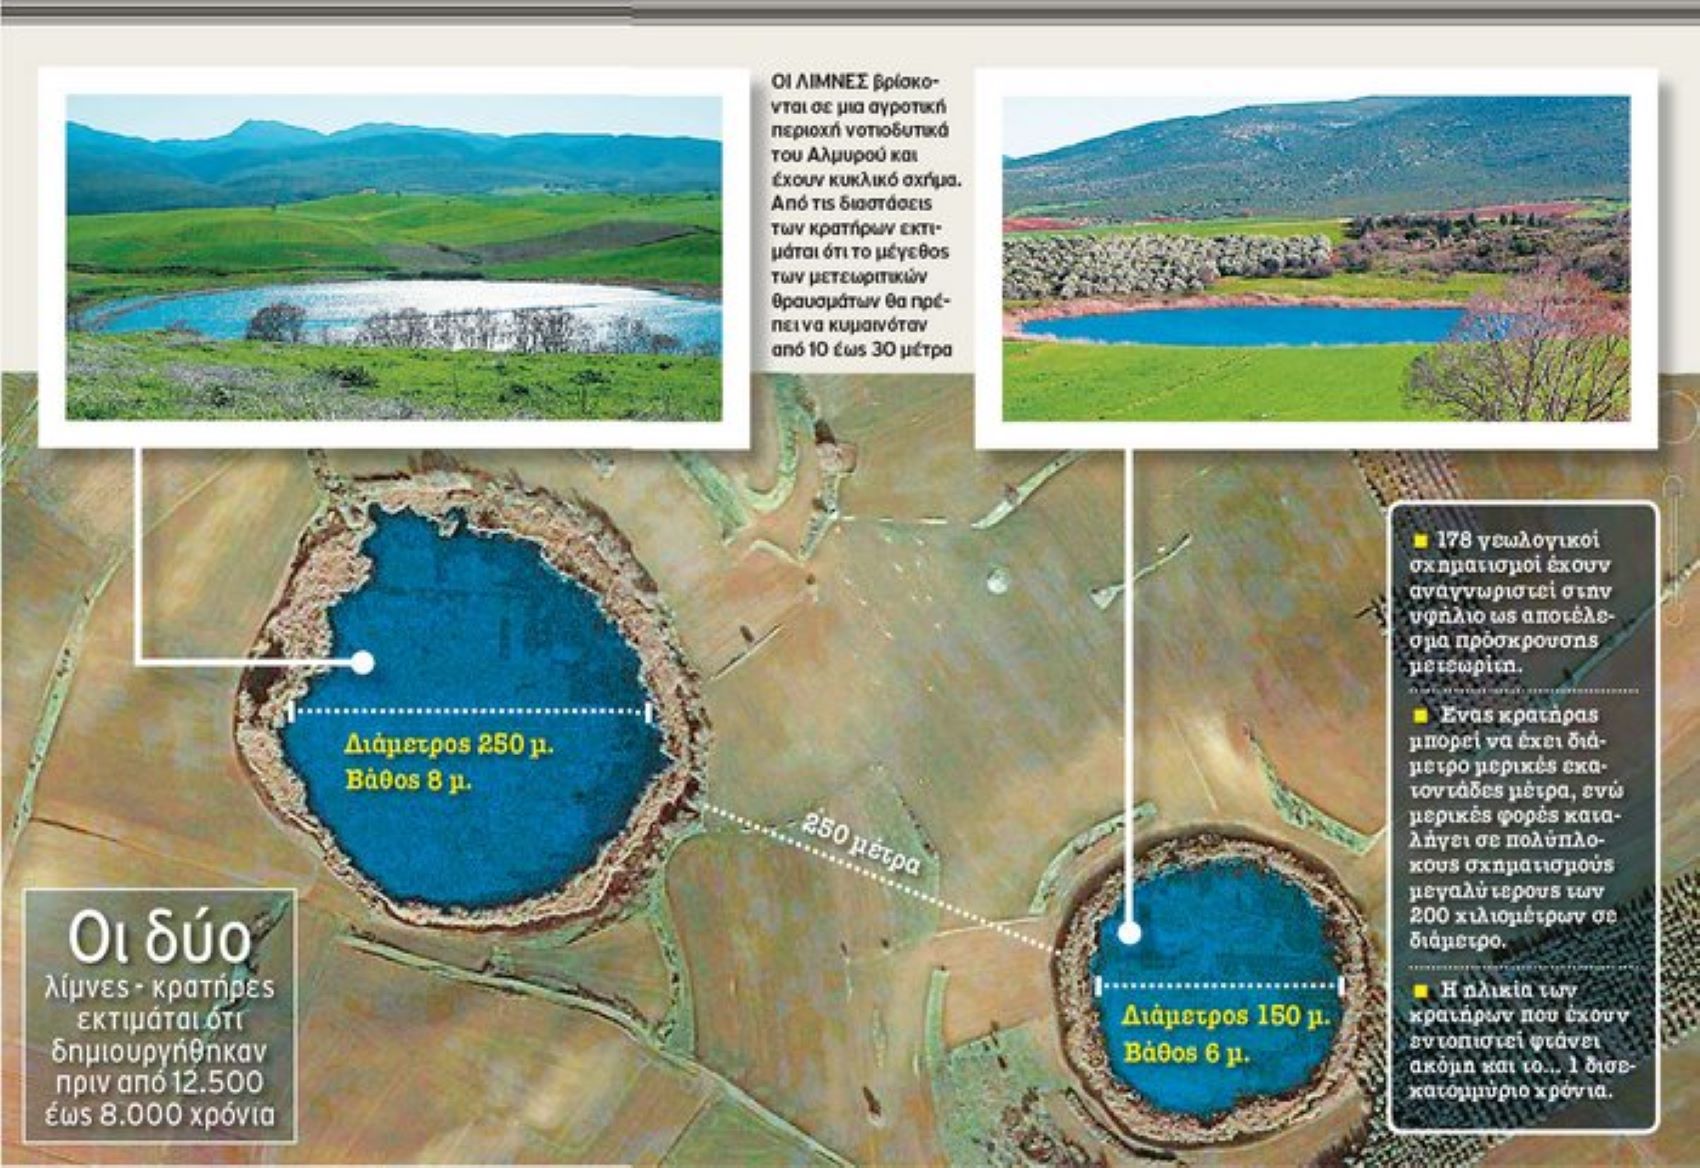 Βόλος- Αλμυρός: Λίμνες Ζερέλια “Τα μάτια του θεού” που ήρθαν από το διάστημα